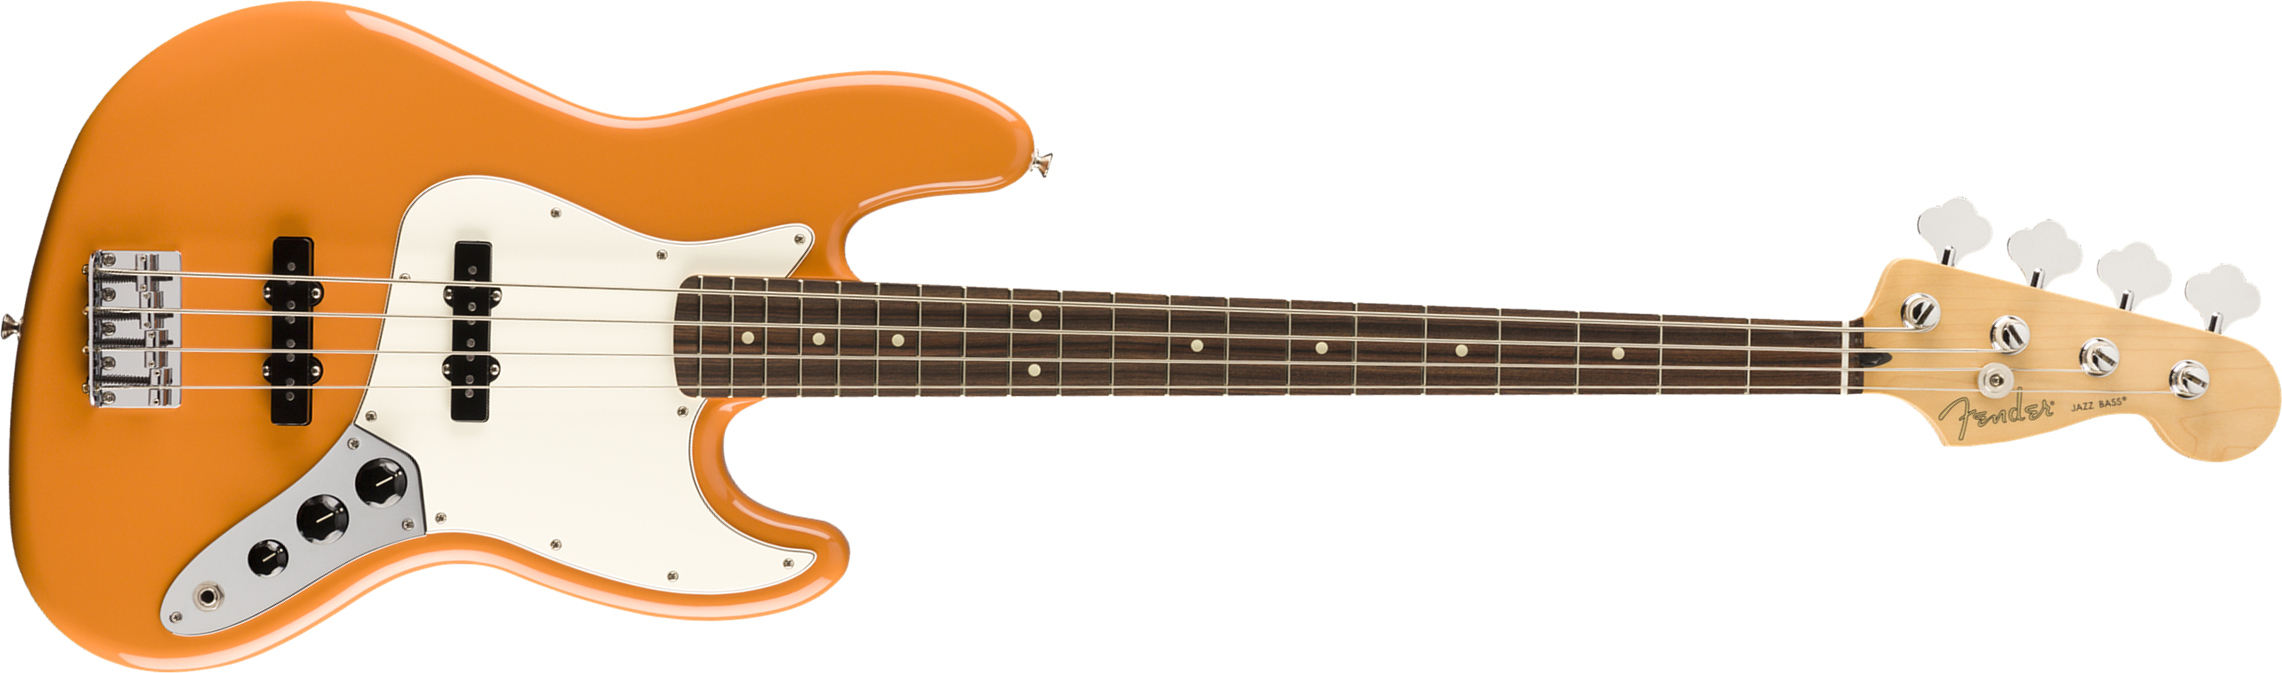 Fender Jazz Bass Player Mex Pf - Capri Orange - Basse Électrique Solid Body - Main picture